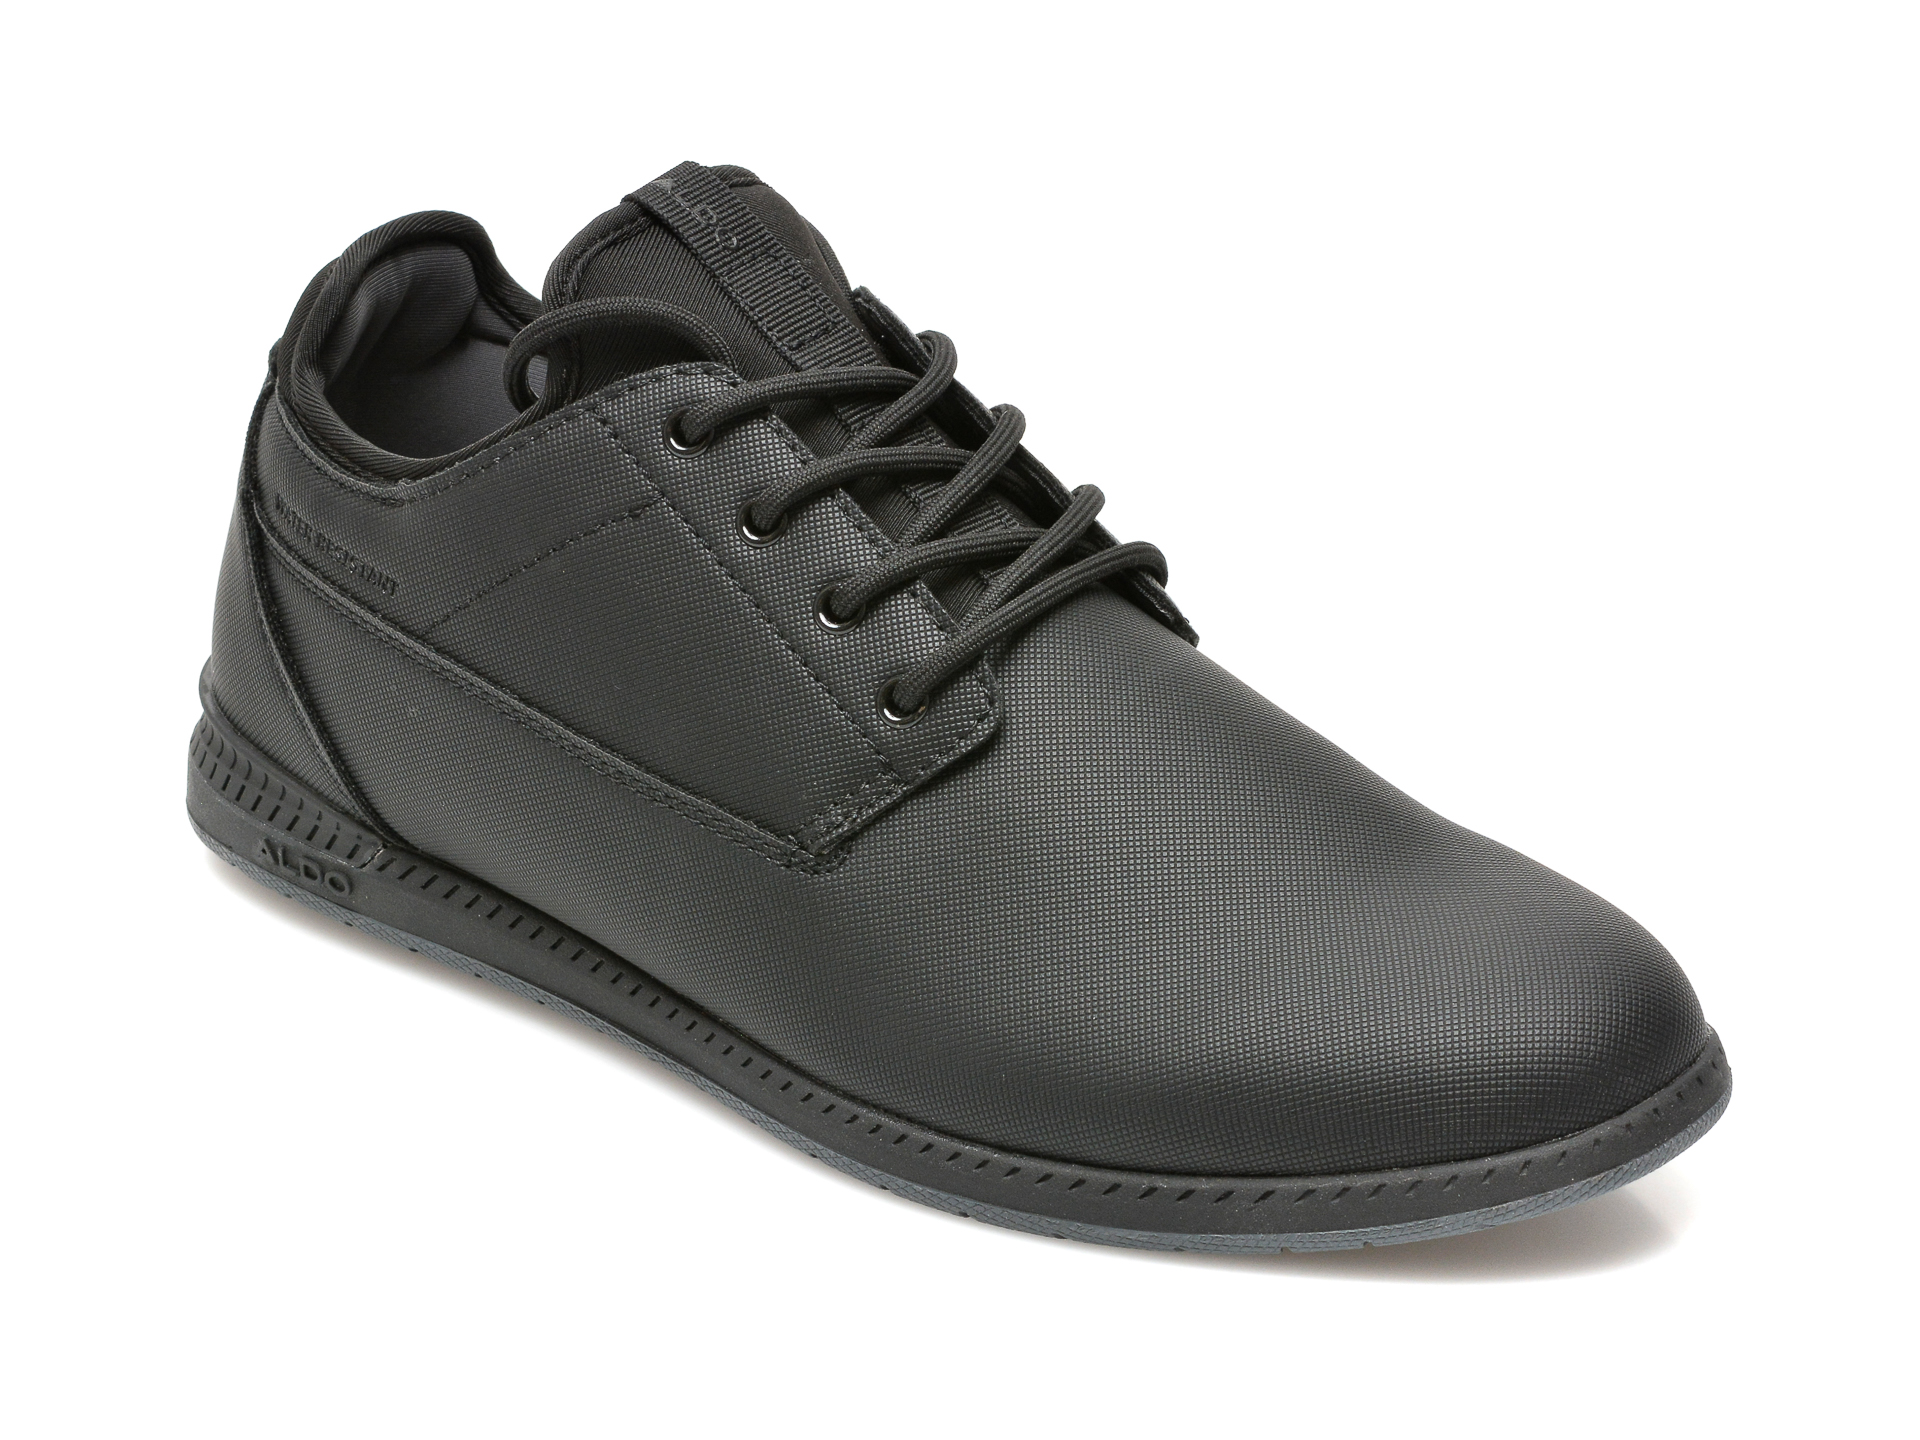 Pantofi ALDO negri, BLUFFERS-WR007, din piele ecologica Aldo imagine 2022 13clothing.ro